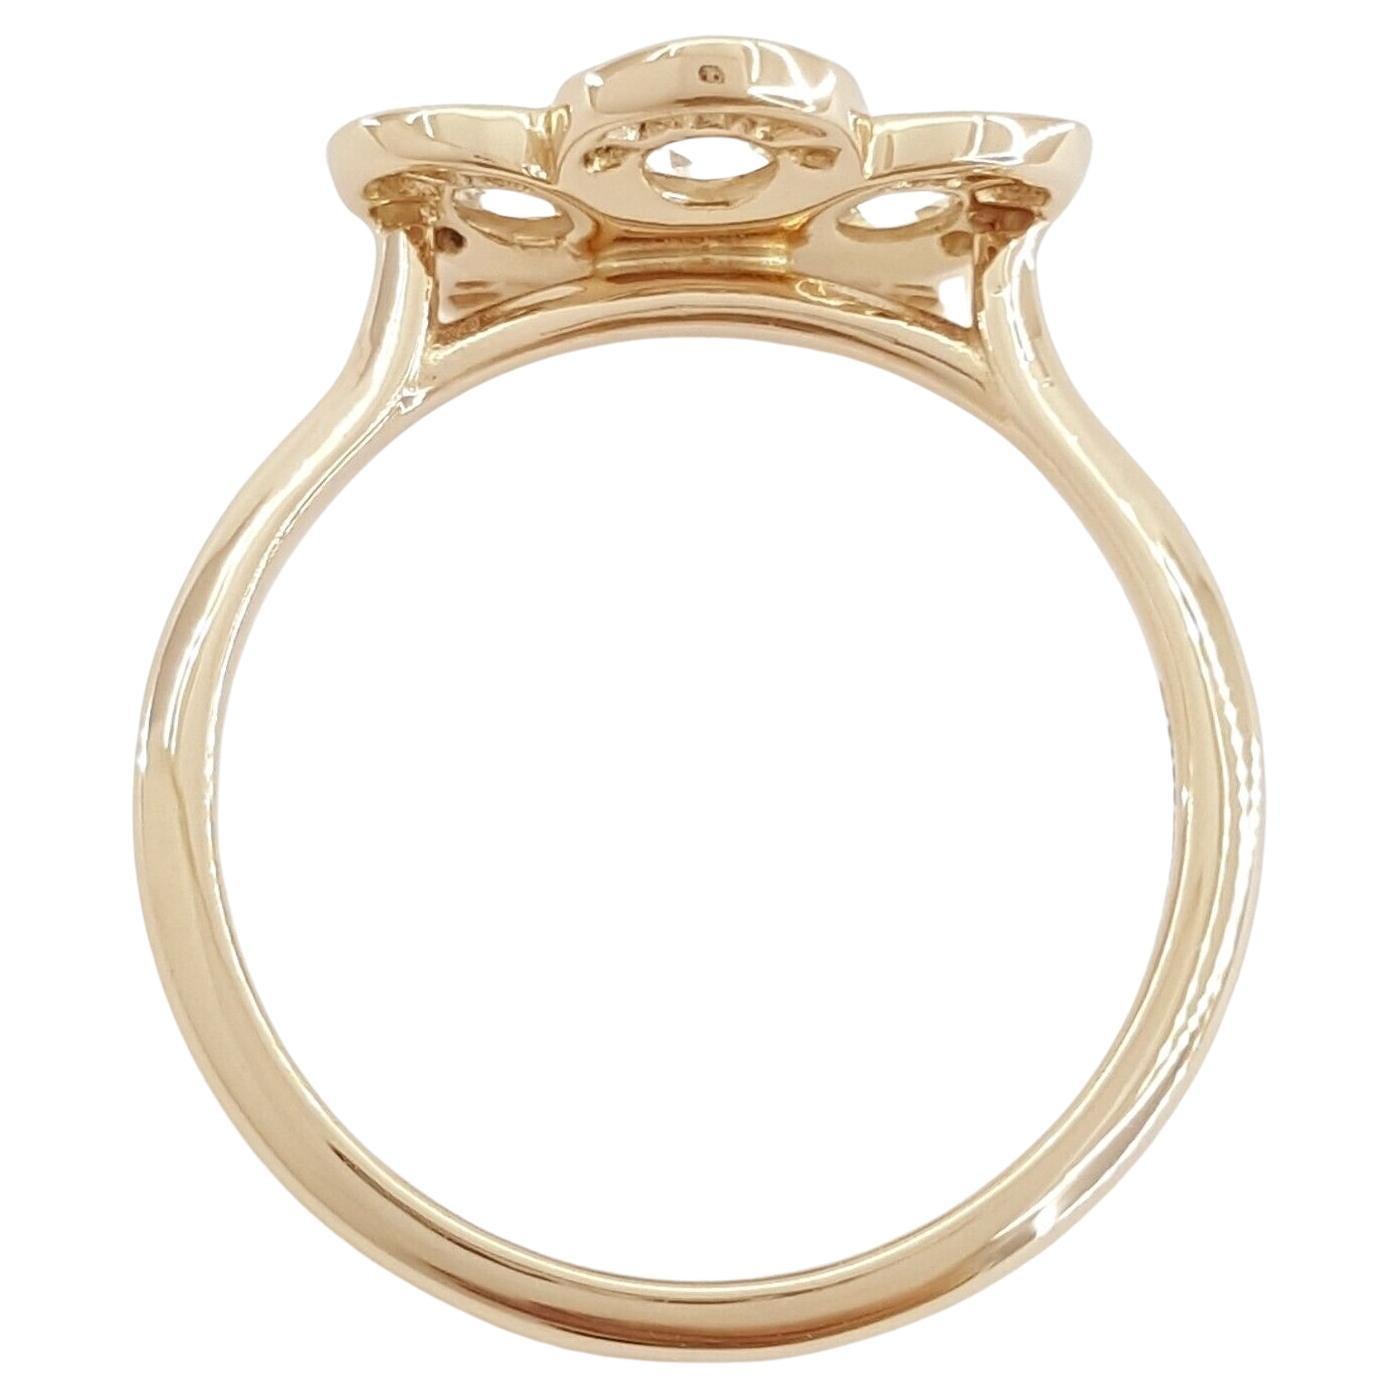 Aus 18 Karat Roségold ist diese Tiffany & Co. Der Enchanted Garden Flower Ring hat ein Gesamtgewicht von 0,35 ct und besticht durch eine Kombination aus Rosenschliff und runden Diamanten.

Mit einem Gewicht von 2,9 g und einer Größe von 5 ist der